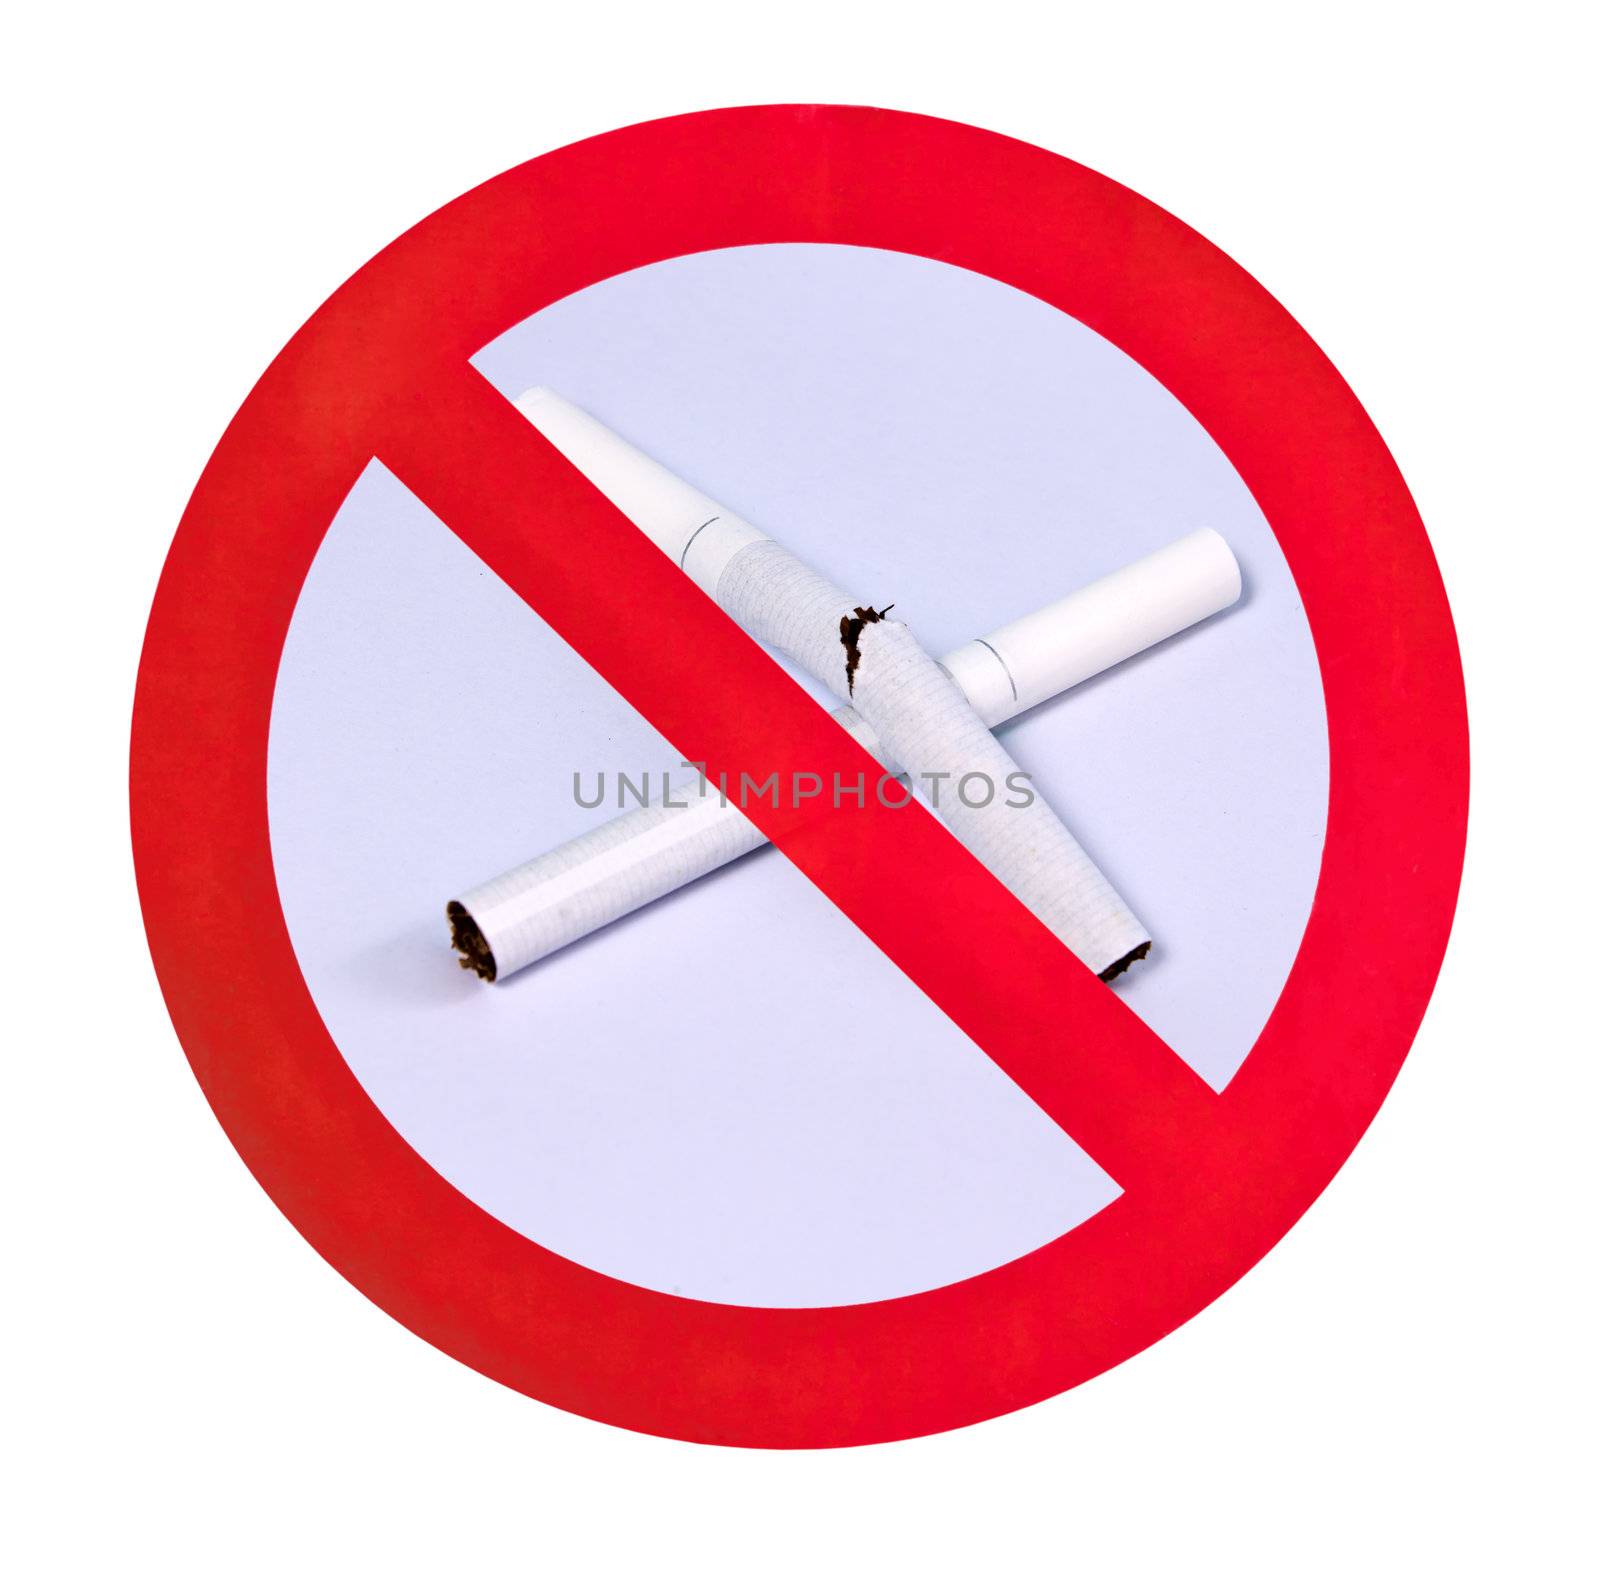 no smoking warning sign isolated